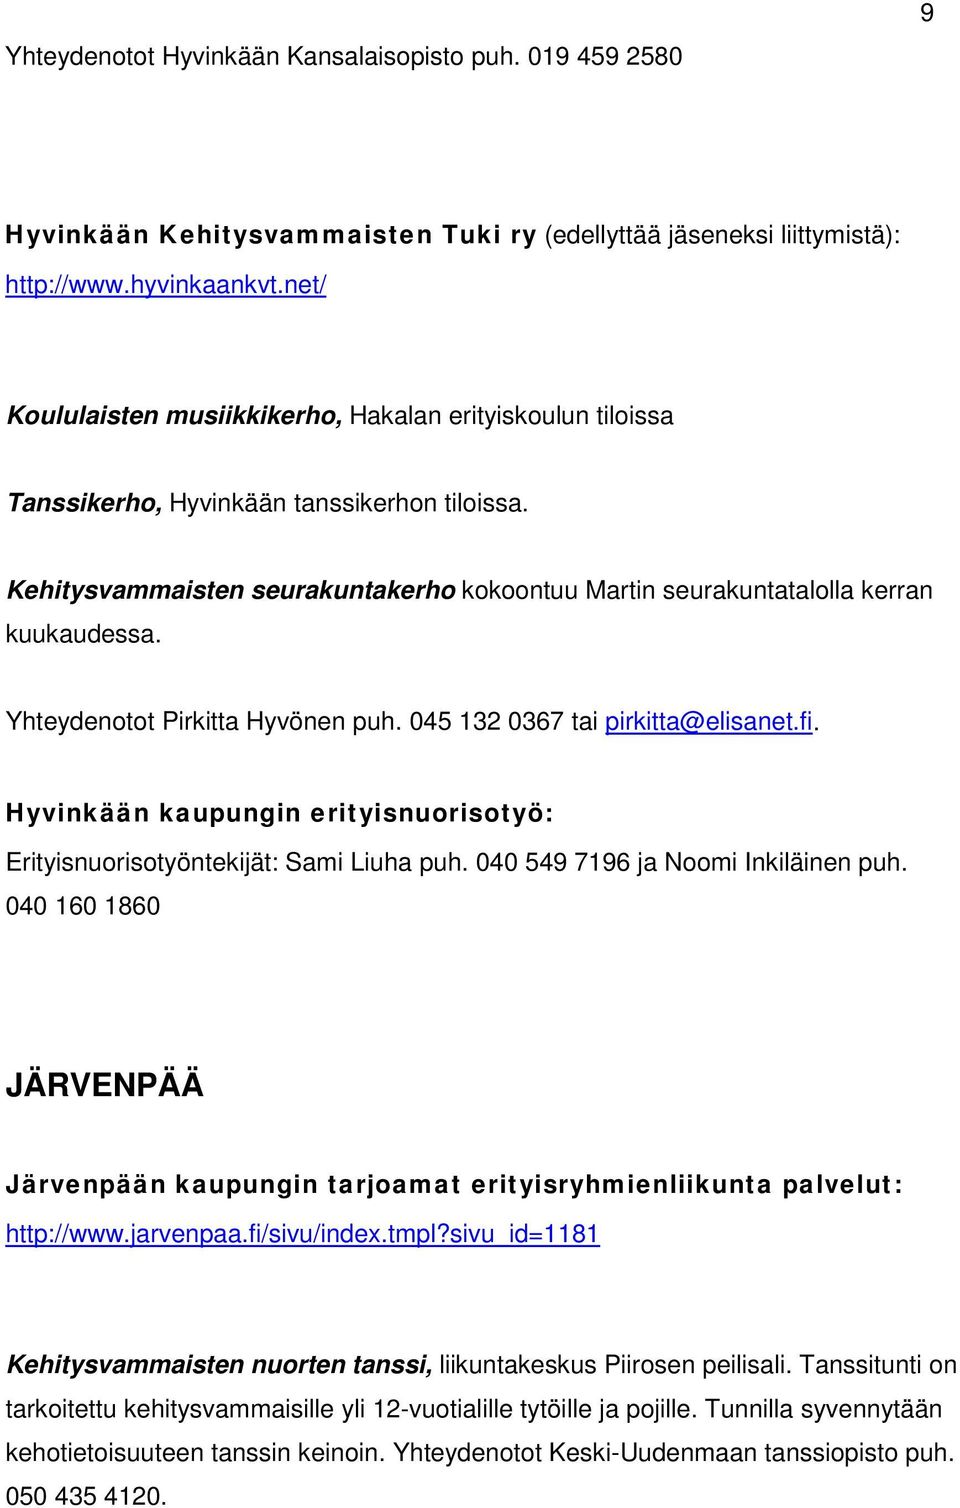 Yhteydenotot Pirkitta Hyvönen puh. 045 132 0367 tai pirkitta@elisanet.fi. Hyvinkään kaupungin erityisnuorisotyö: Erityisnuorisotyöntekijät: Sami Liuha puh. 040 549 7196 ja Noomi Inkiläinen puh.